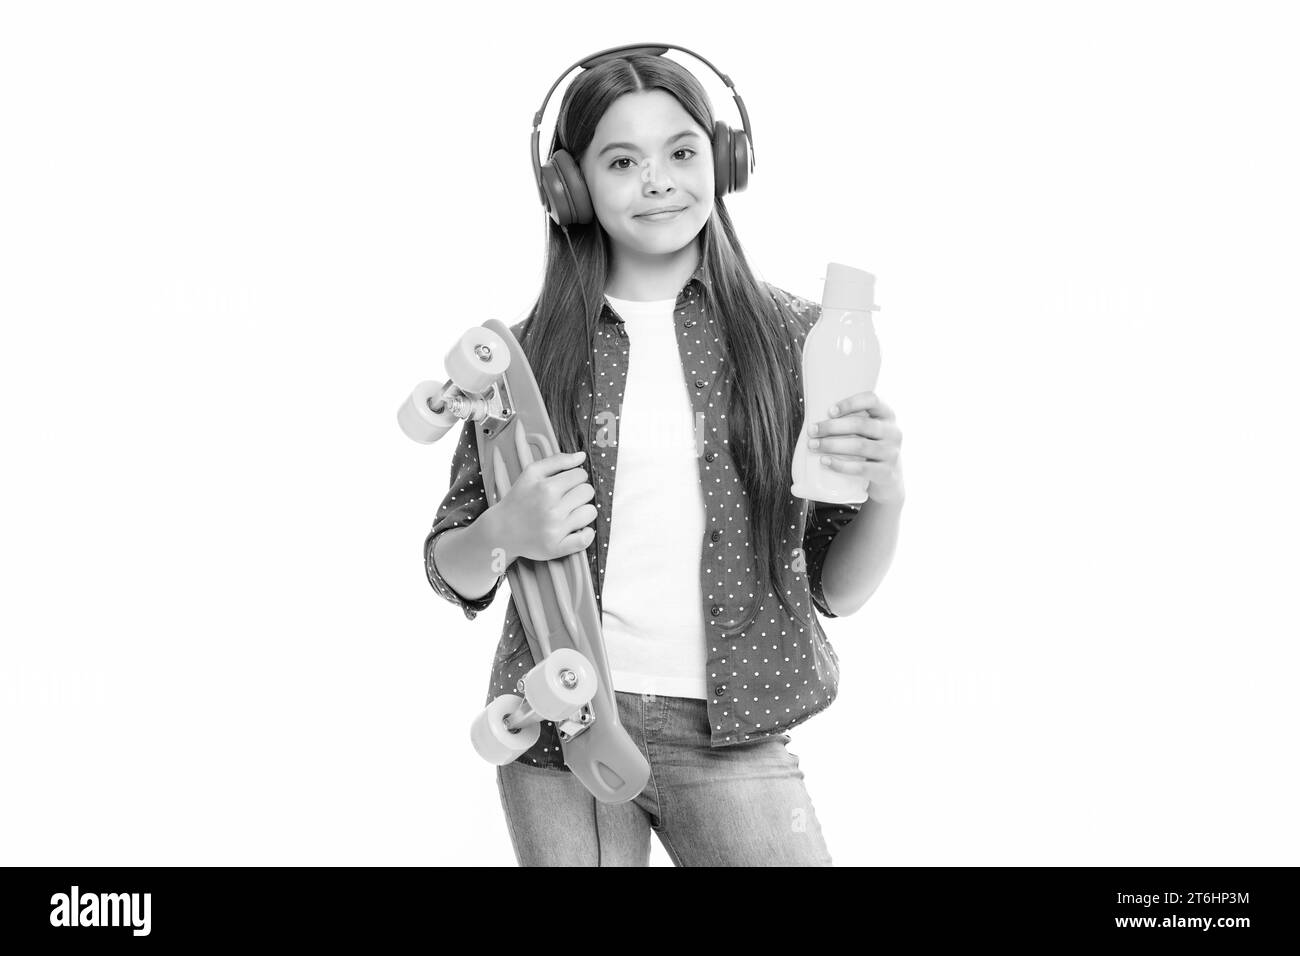 Belle et mode jeune fille de l'adolescence posant avec le skateboard et le casque. Mode de vie de rue adolescent. Banque D'Images